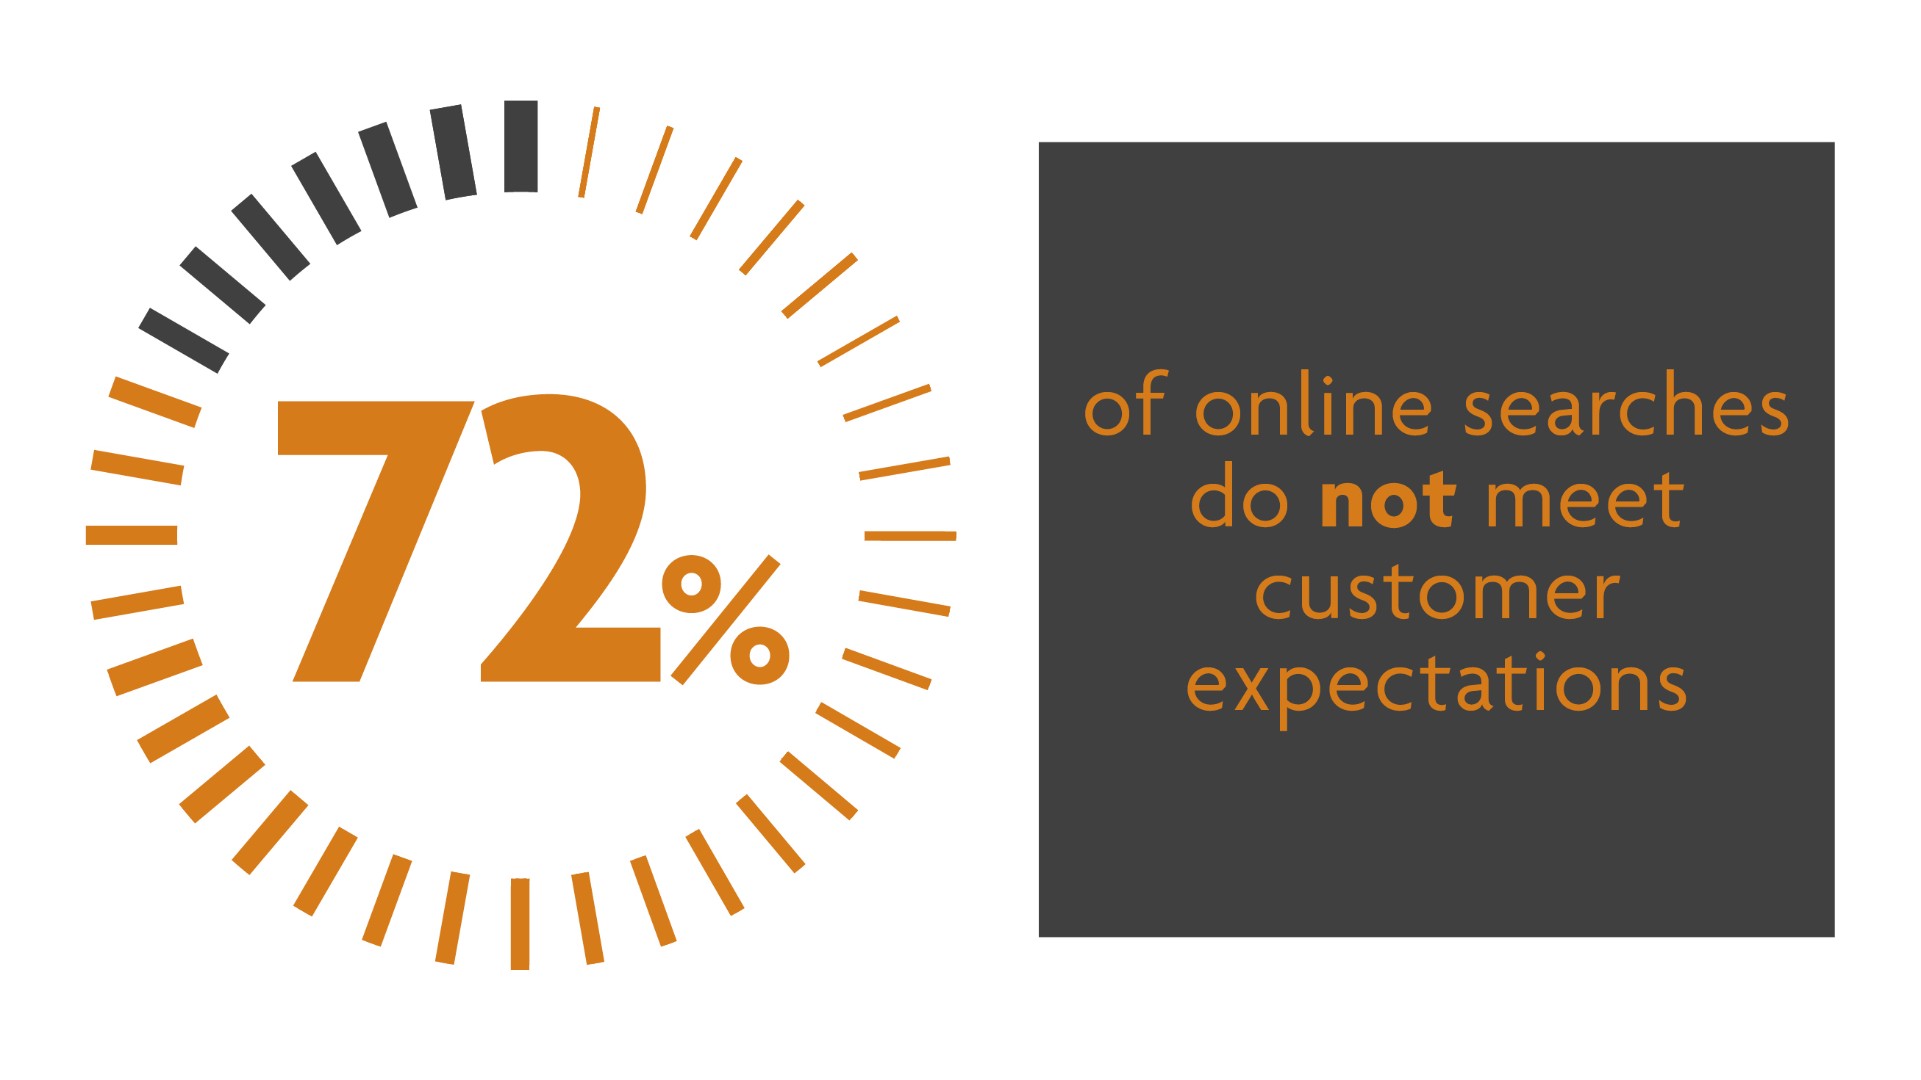 El 72% de las búsquedas en línea no cumplen las expectativas del cliente